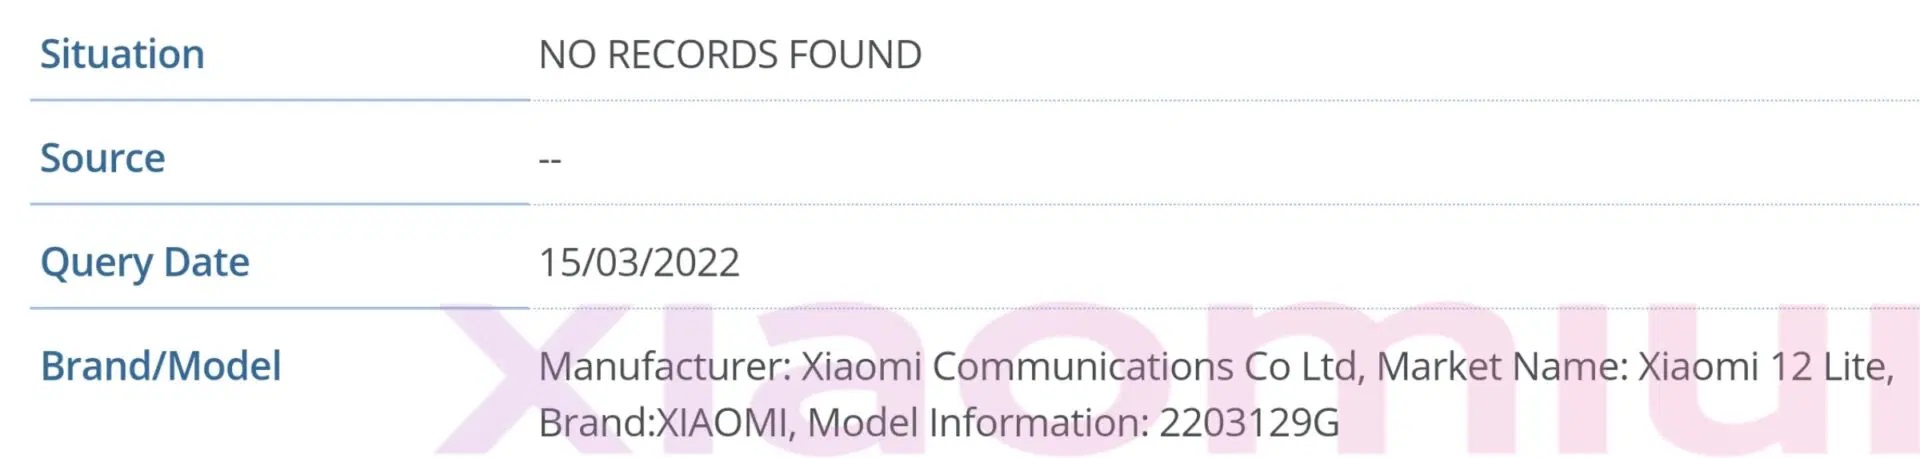 مرور Xiaomi 12 Lite على قاعدة بيانات IMEI